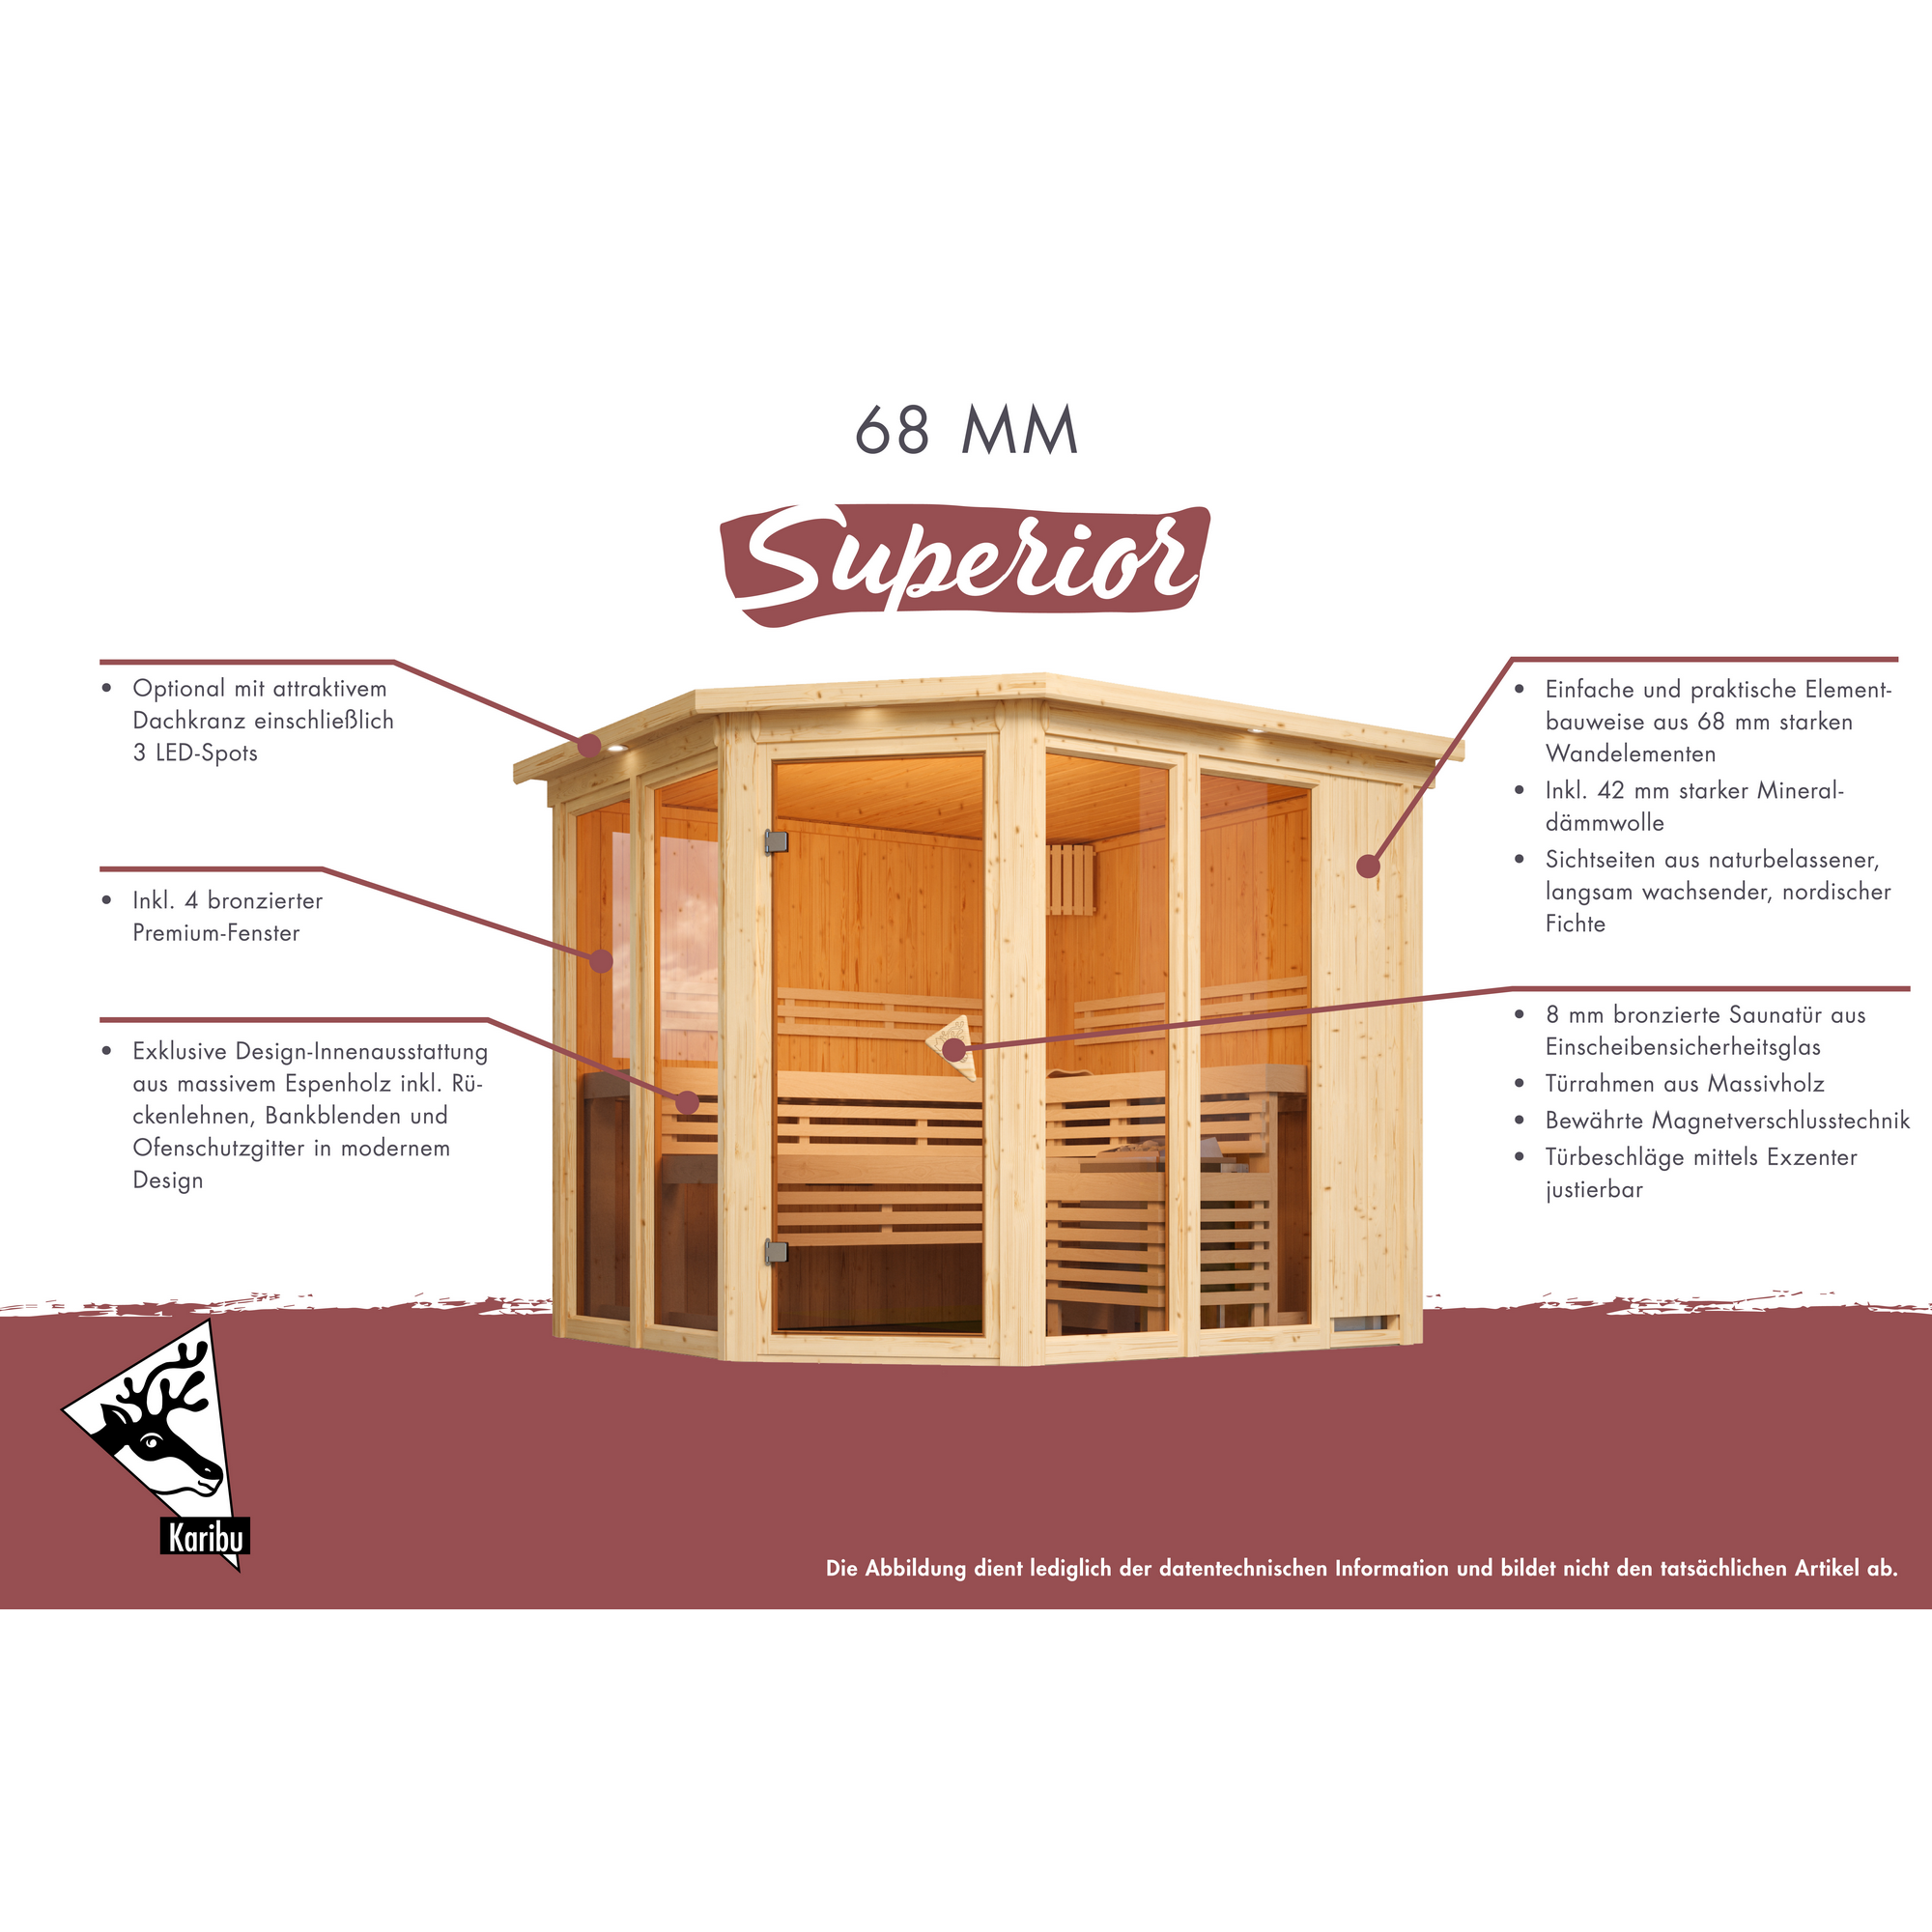 Sauna 'Ariadna 3' naturbelassen mit bronzierter Tür 9 kW Ofen integrierte Steuerung 231 x 196 x 198 cm + product picture